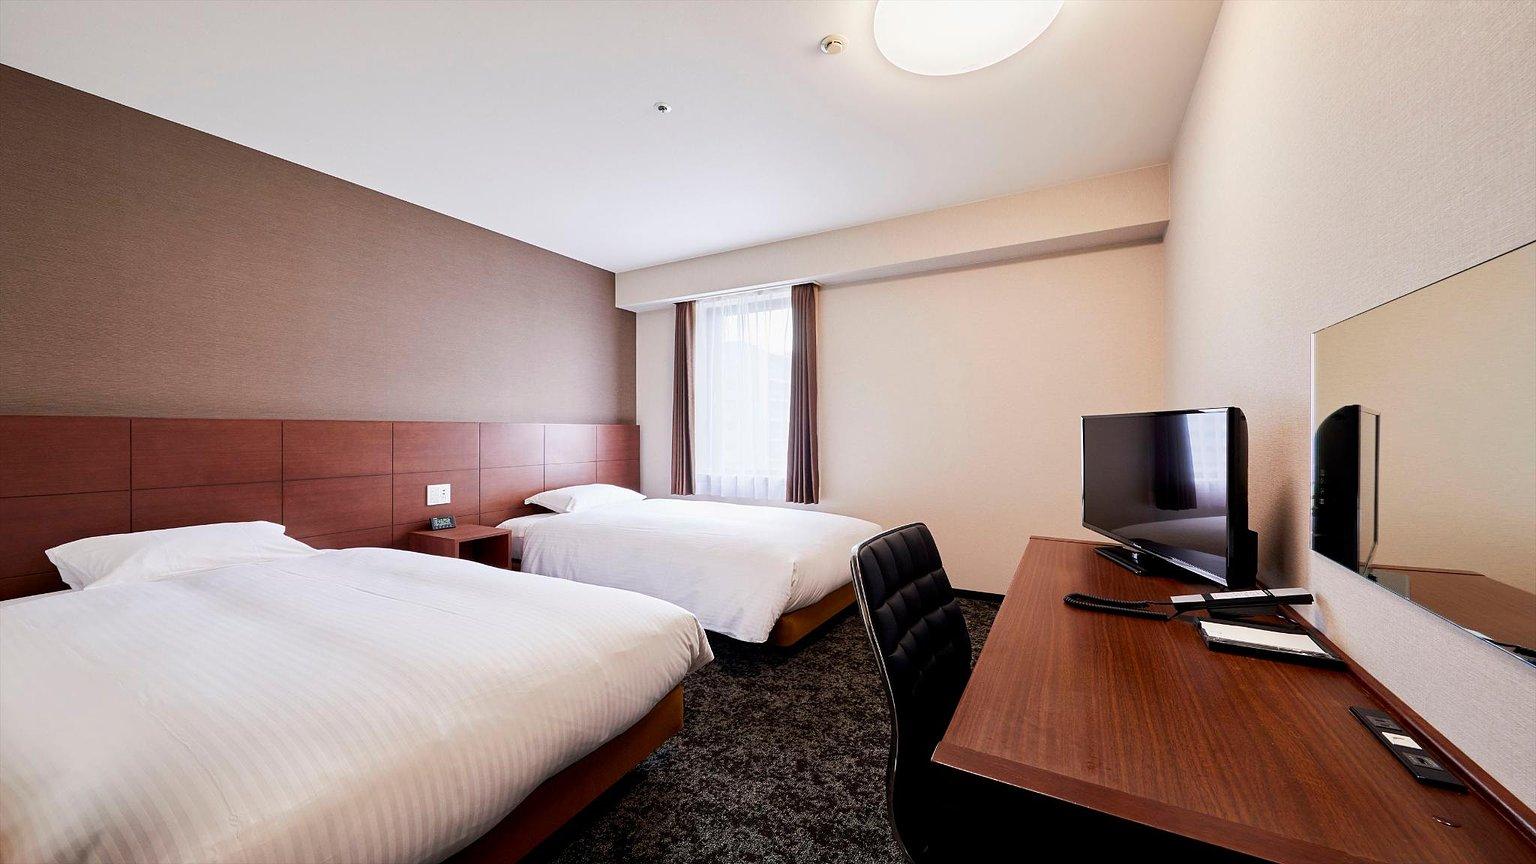 Twin Room - 호텔 윙 인터내셔널 고베 신-나가타 에키마에 (Hotel Wing International Kobe Shin-Nagata Ekimae) / Hotel Wing International Kobe Shin-Nagata Ekimae